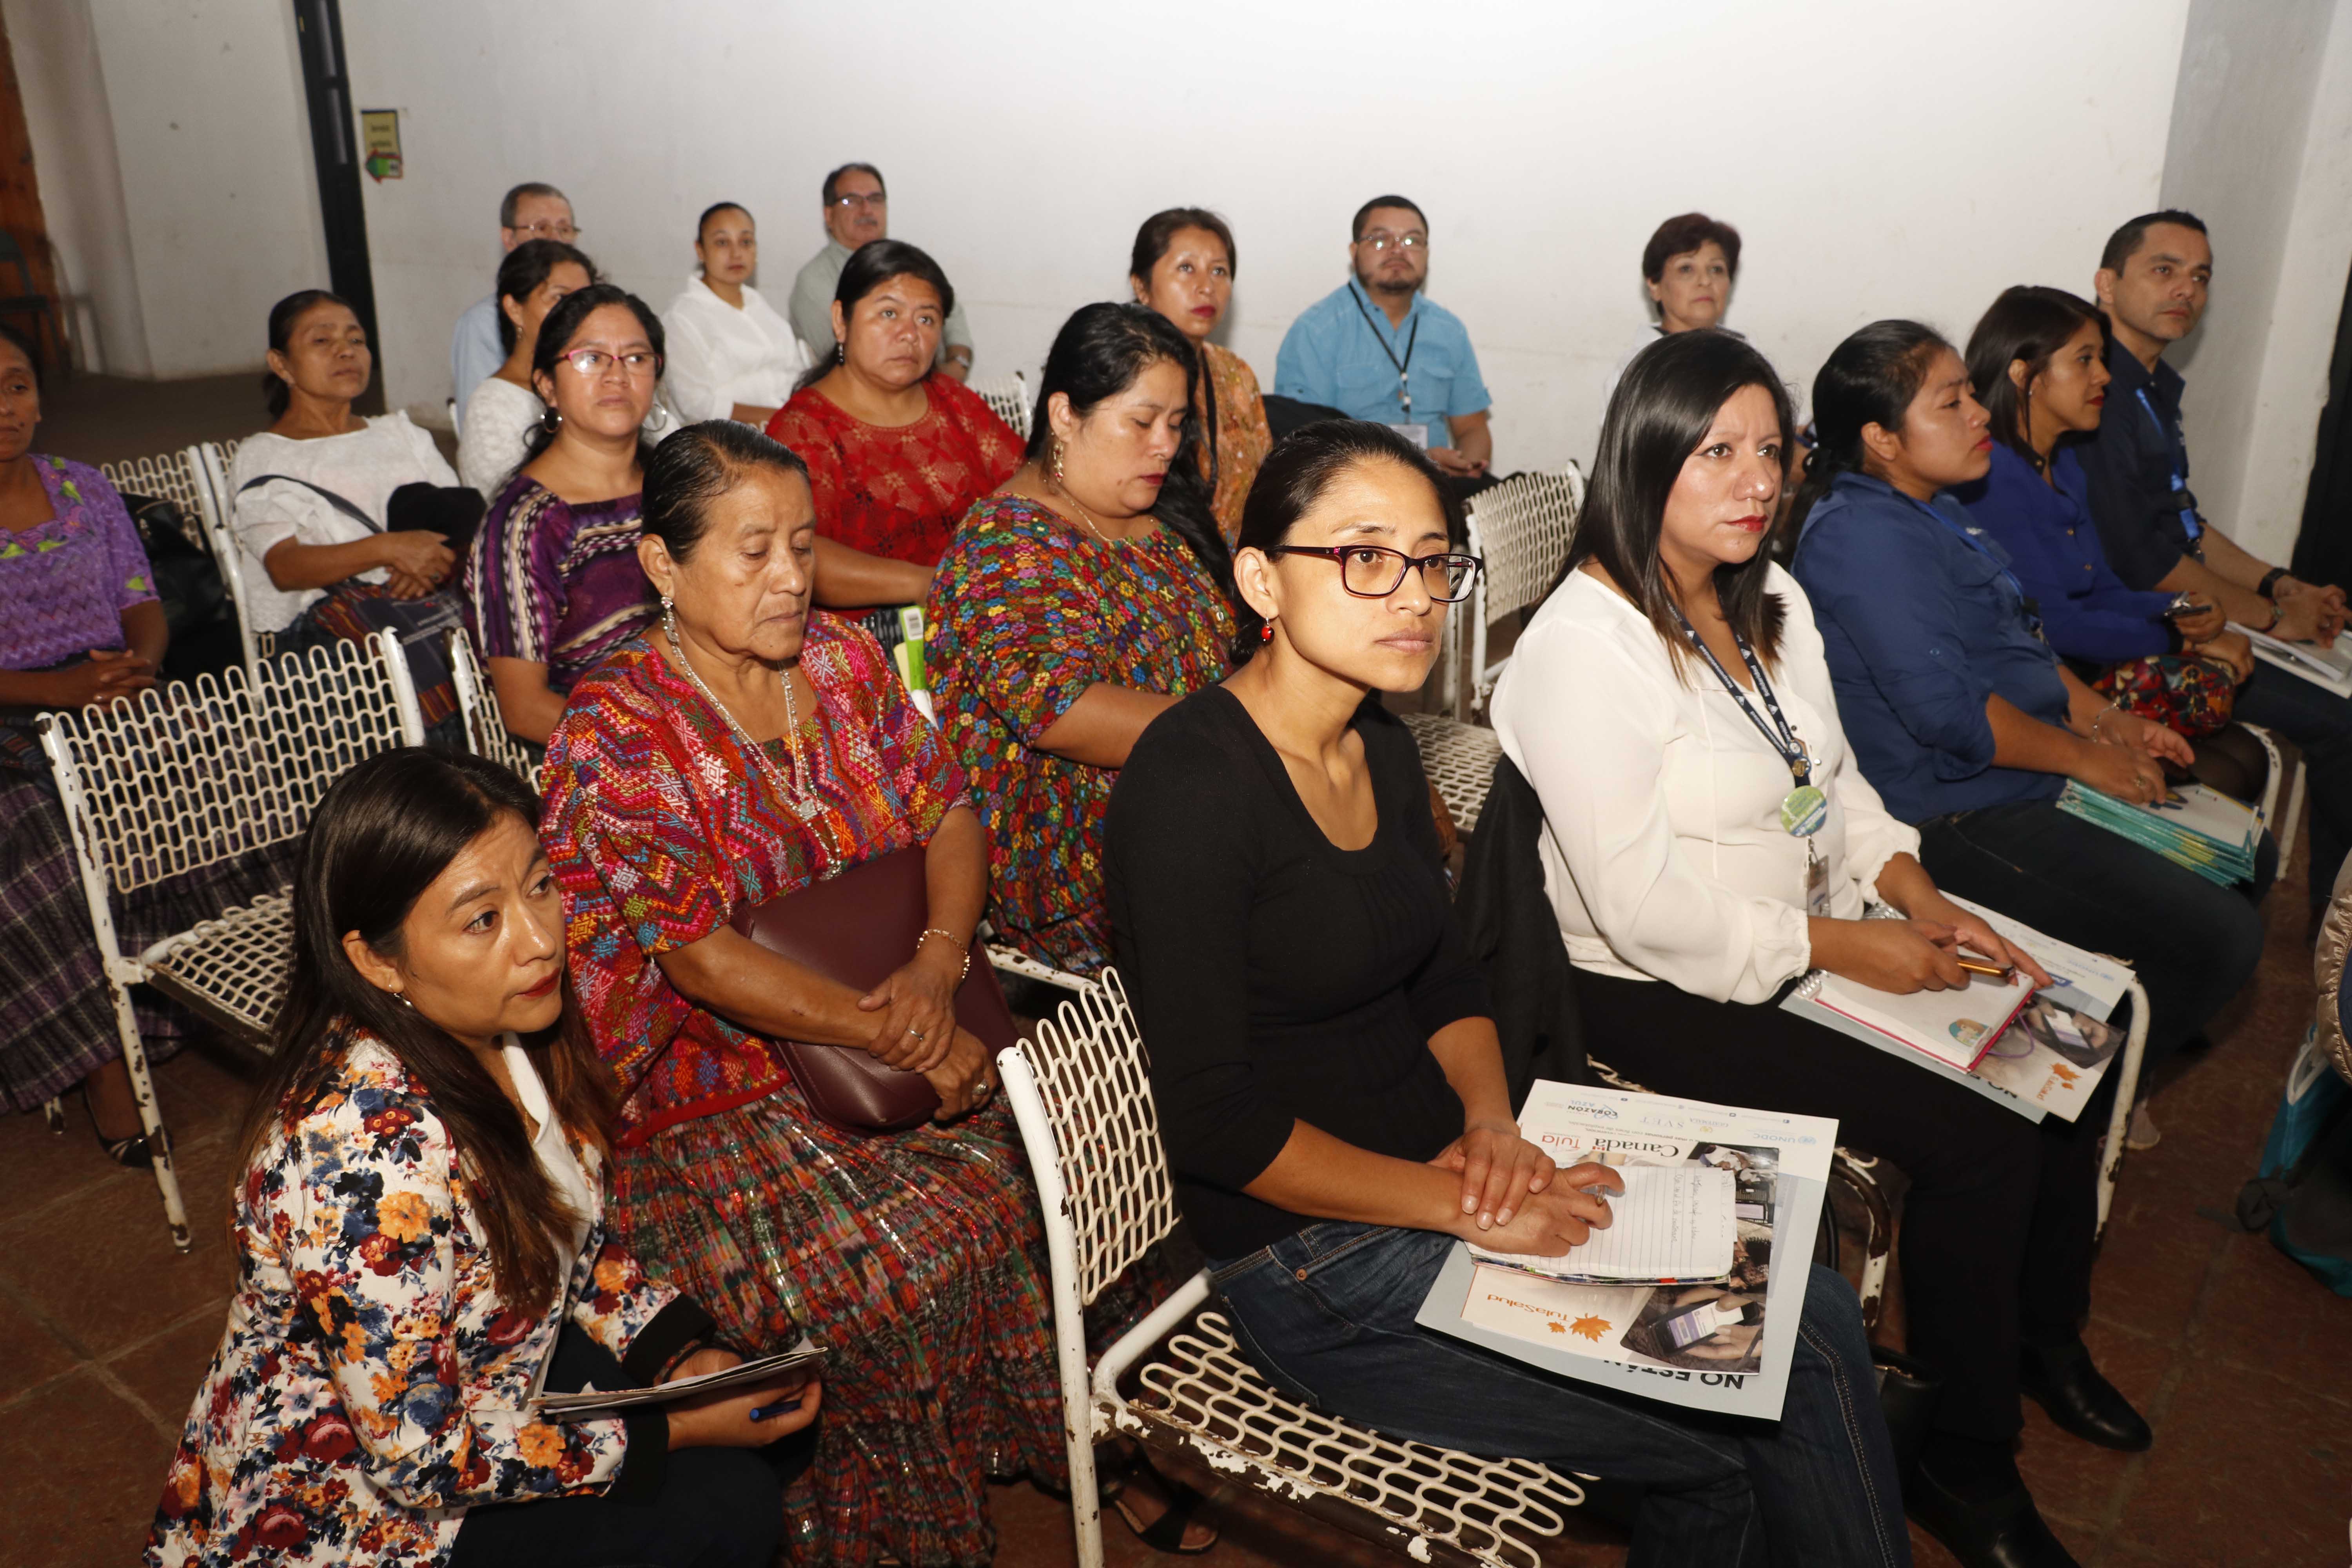 Autoridades analizan la situación de embarazos en menores y muertes maternas en Alta Verapaz. (Foto Prensa Libre: Eduardo Sam)